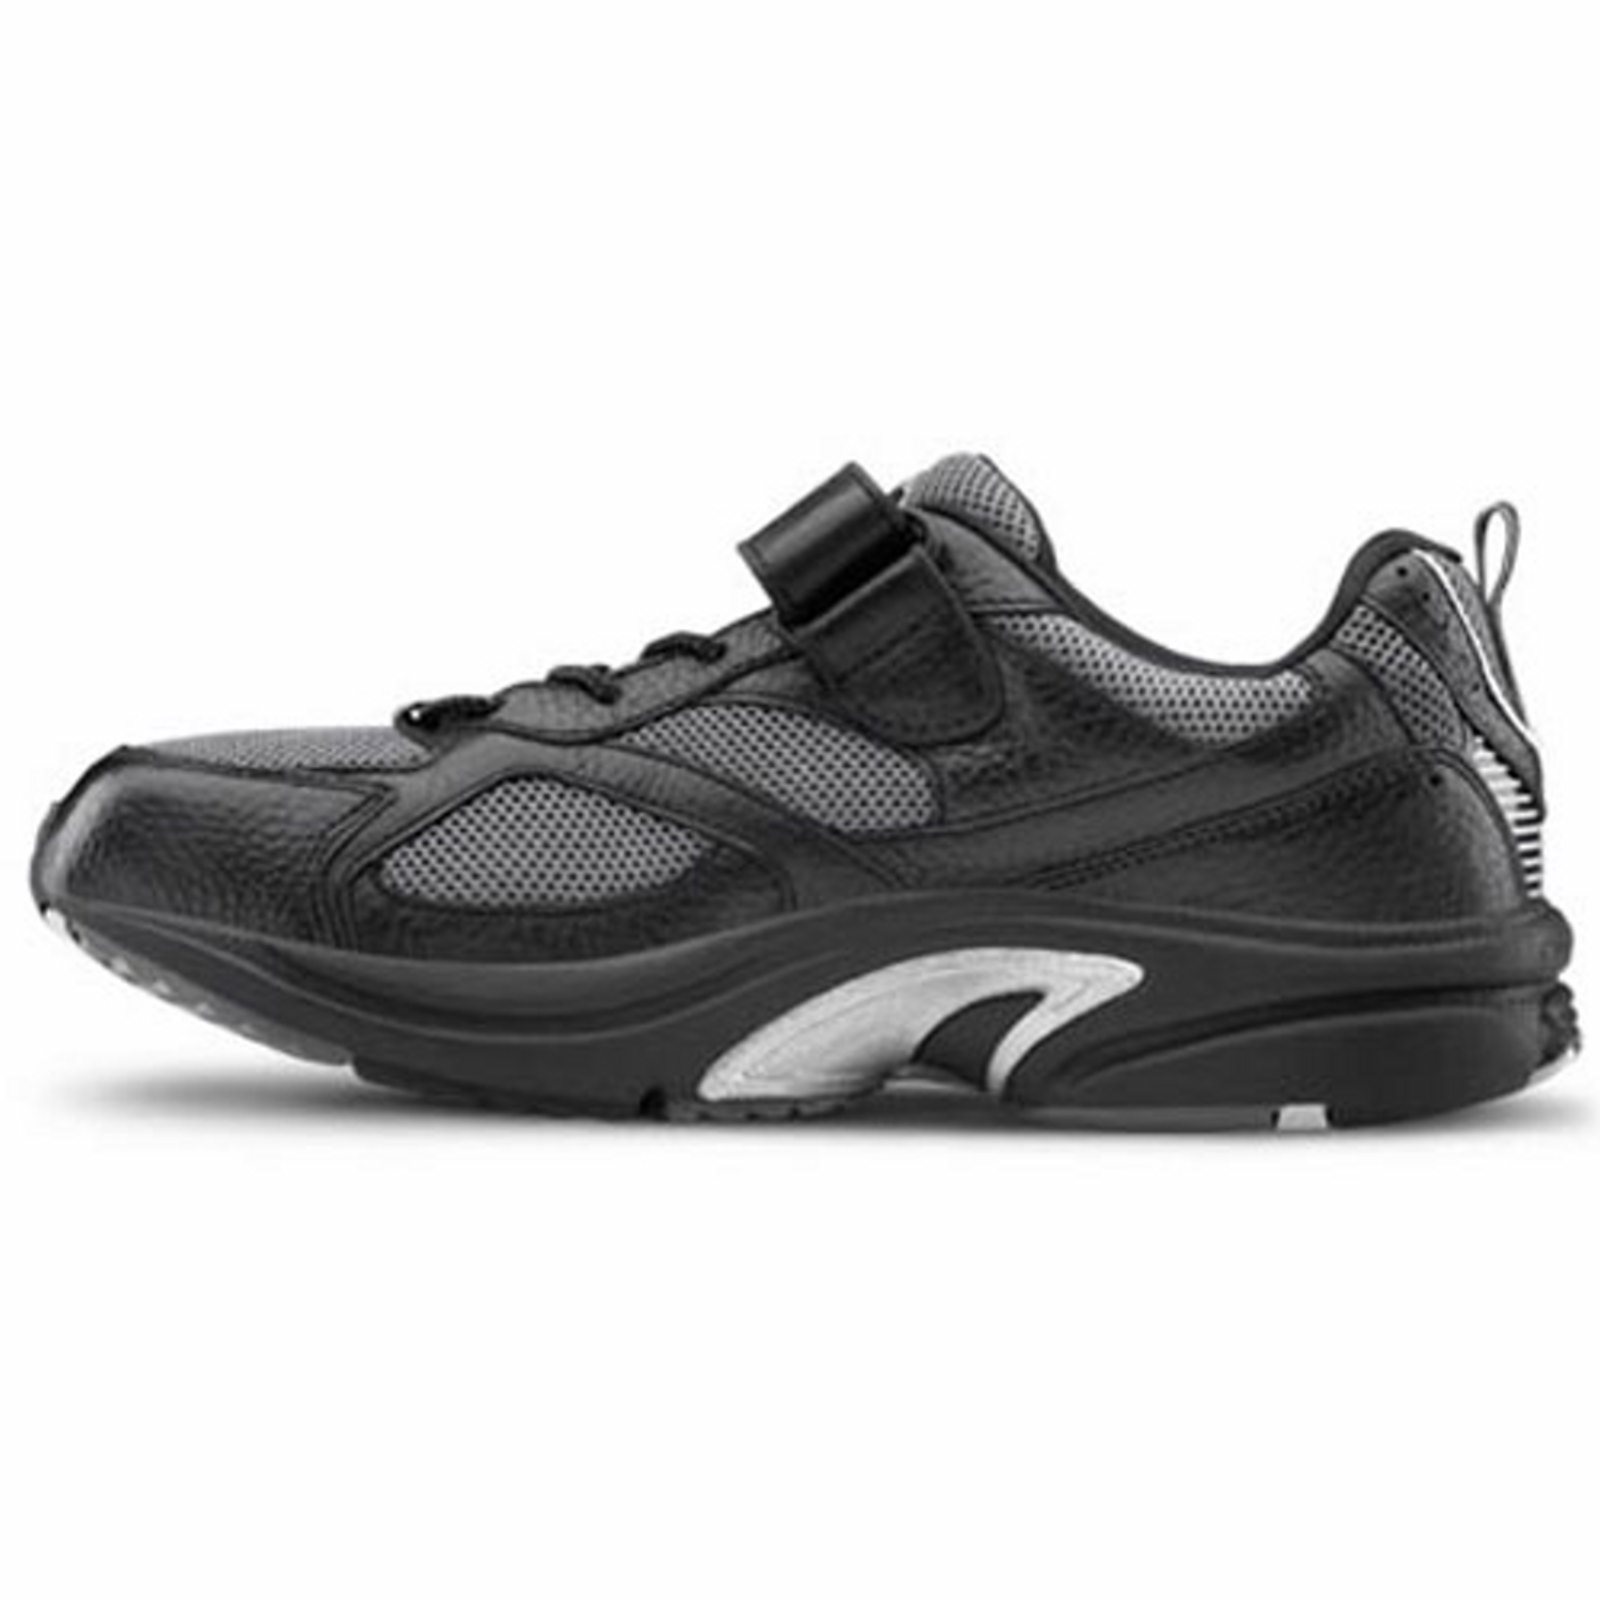 Dr. Comfort Endurance Men's Athletic Shoe: 9 Wide (E/2E) Black Elastic Lace w/Strap - image 4 of 5